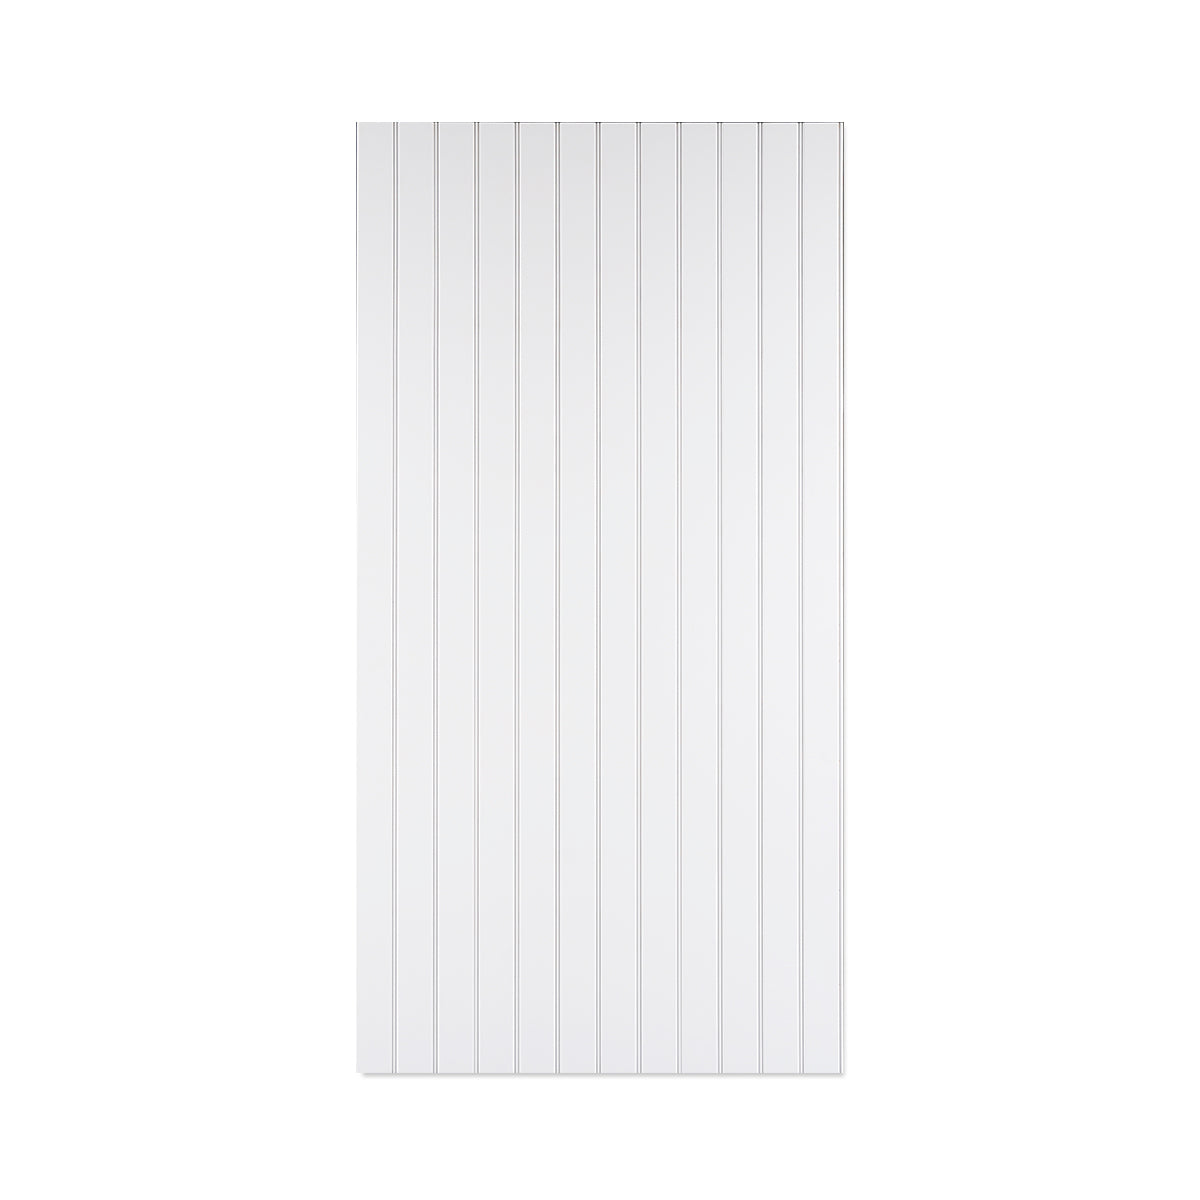 4’ X 8’ Primed White Beaded panels 3" On Centre